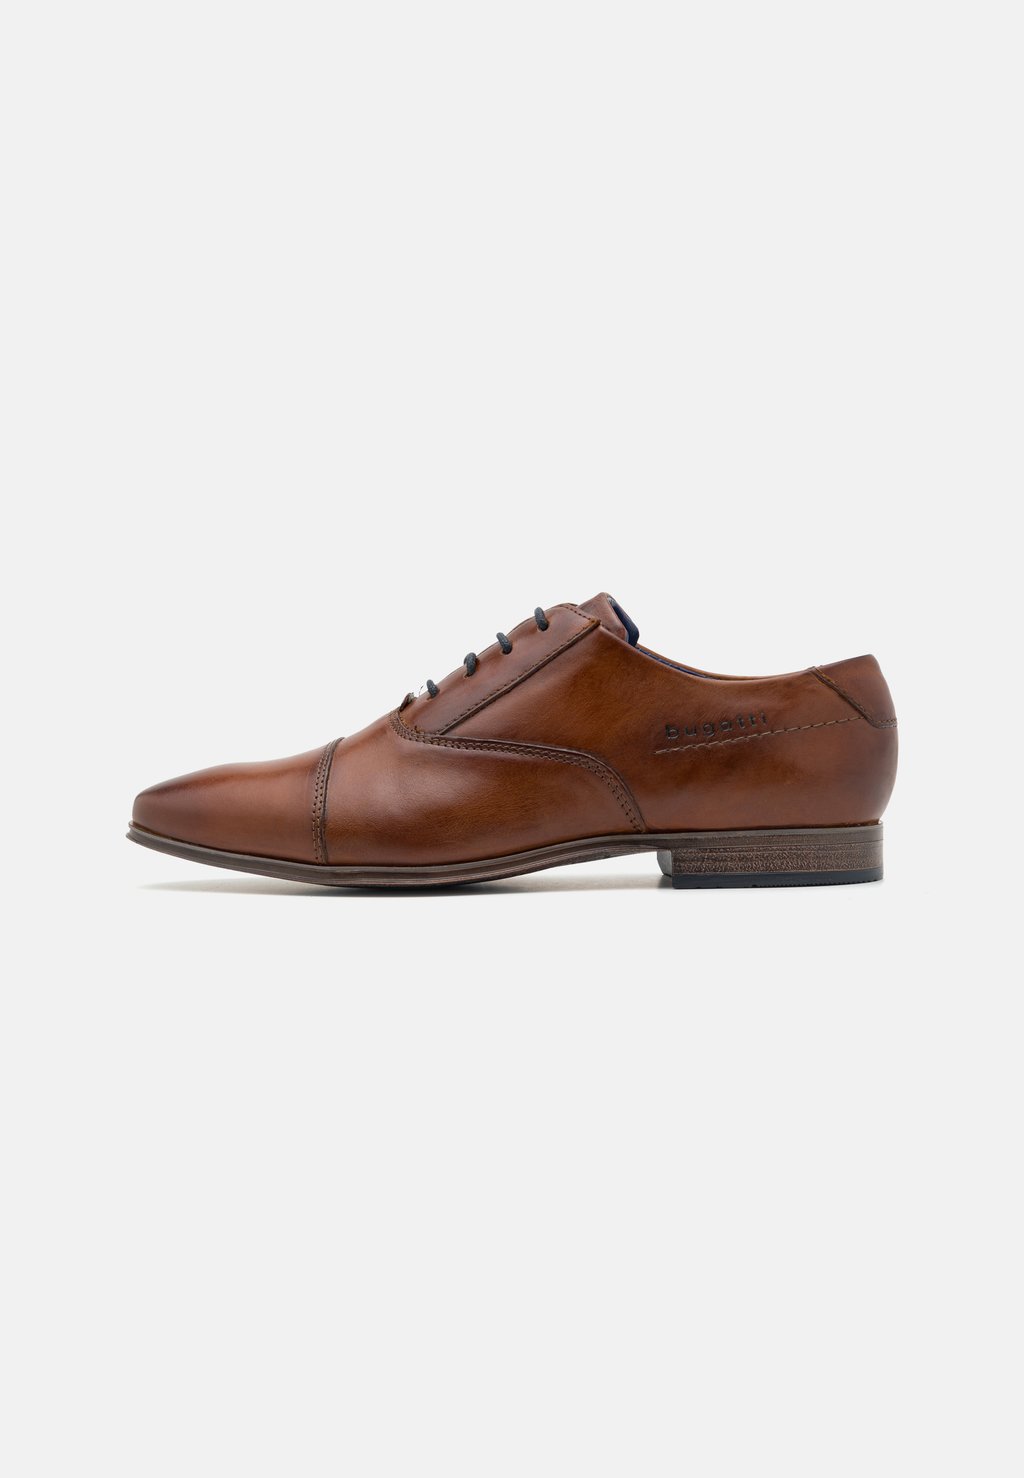 Элегантные туфли на шнуровке Morino bugatti, цвет cognac